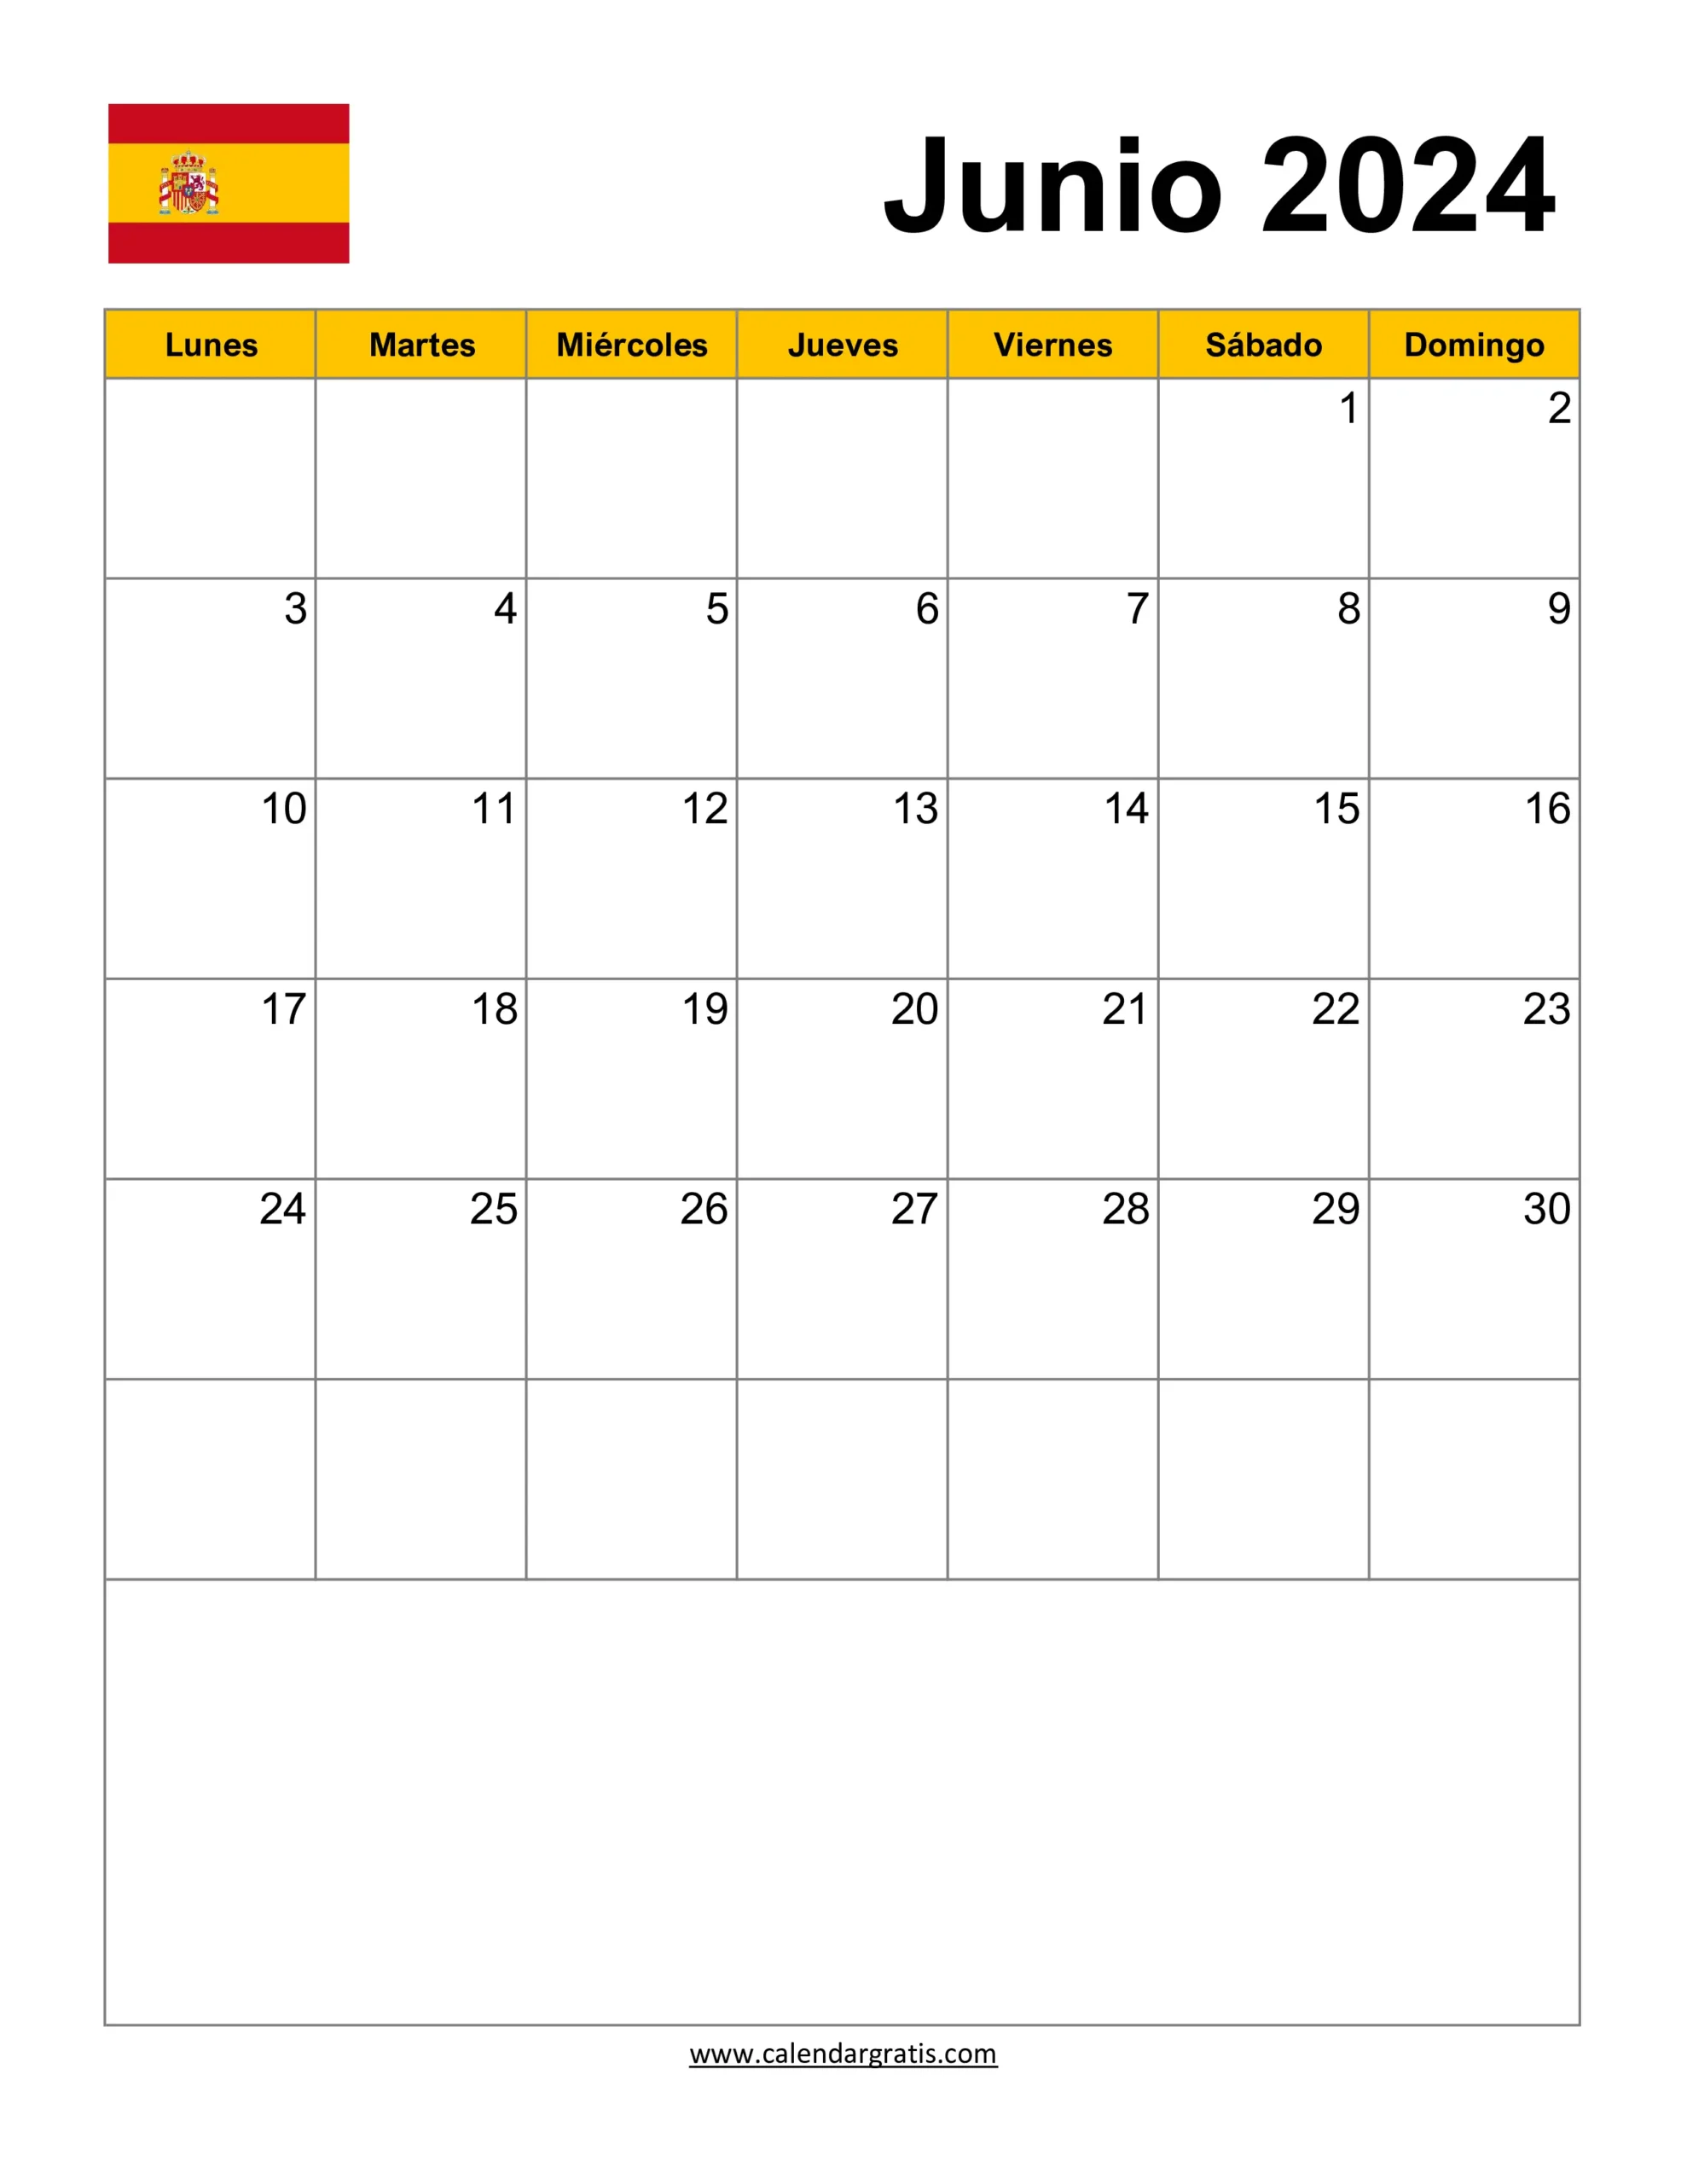 Calendario Junio 2024 España con Notas y Diseño Vertical